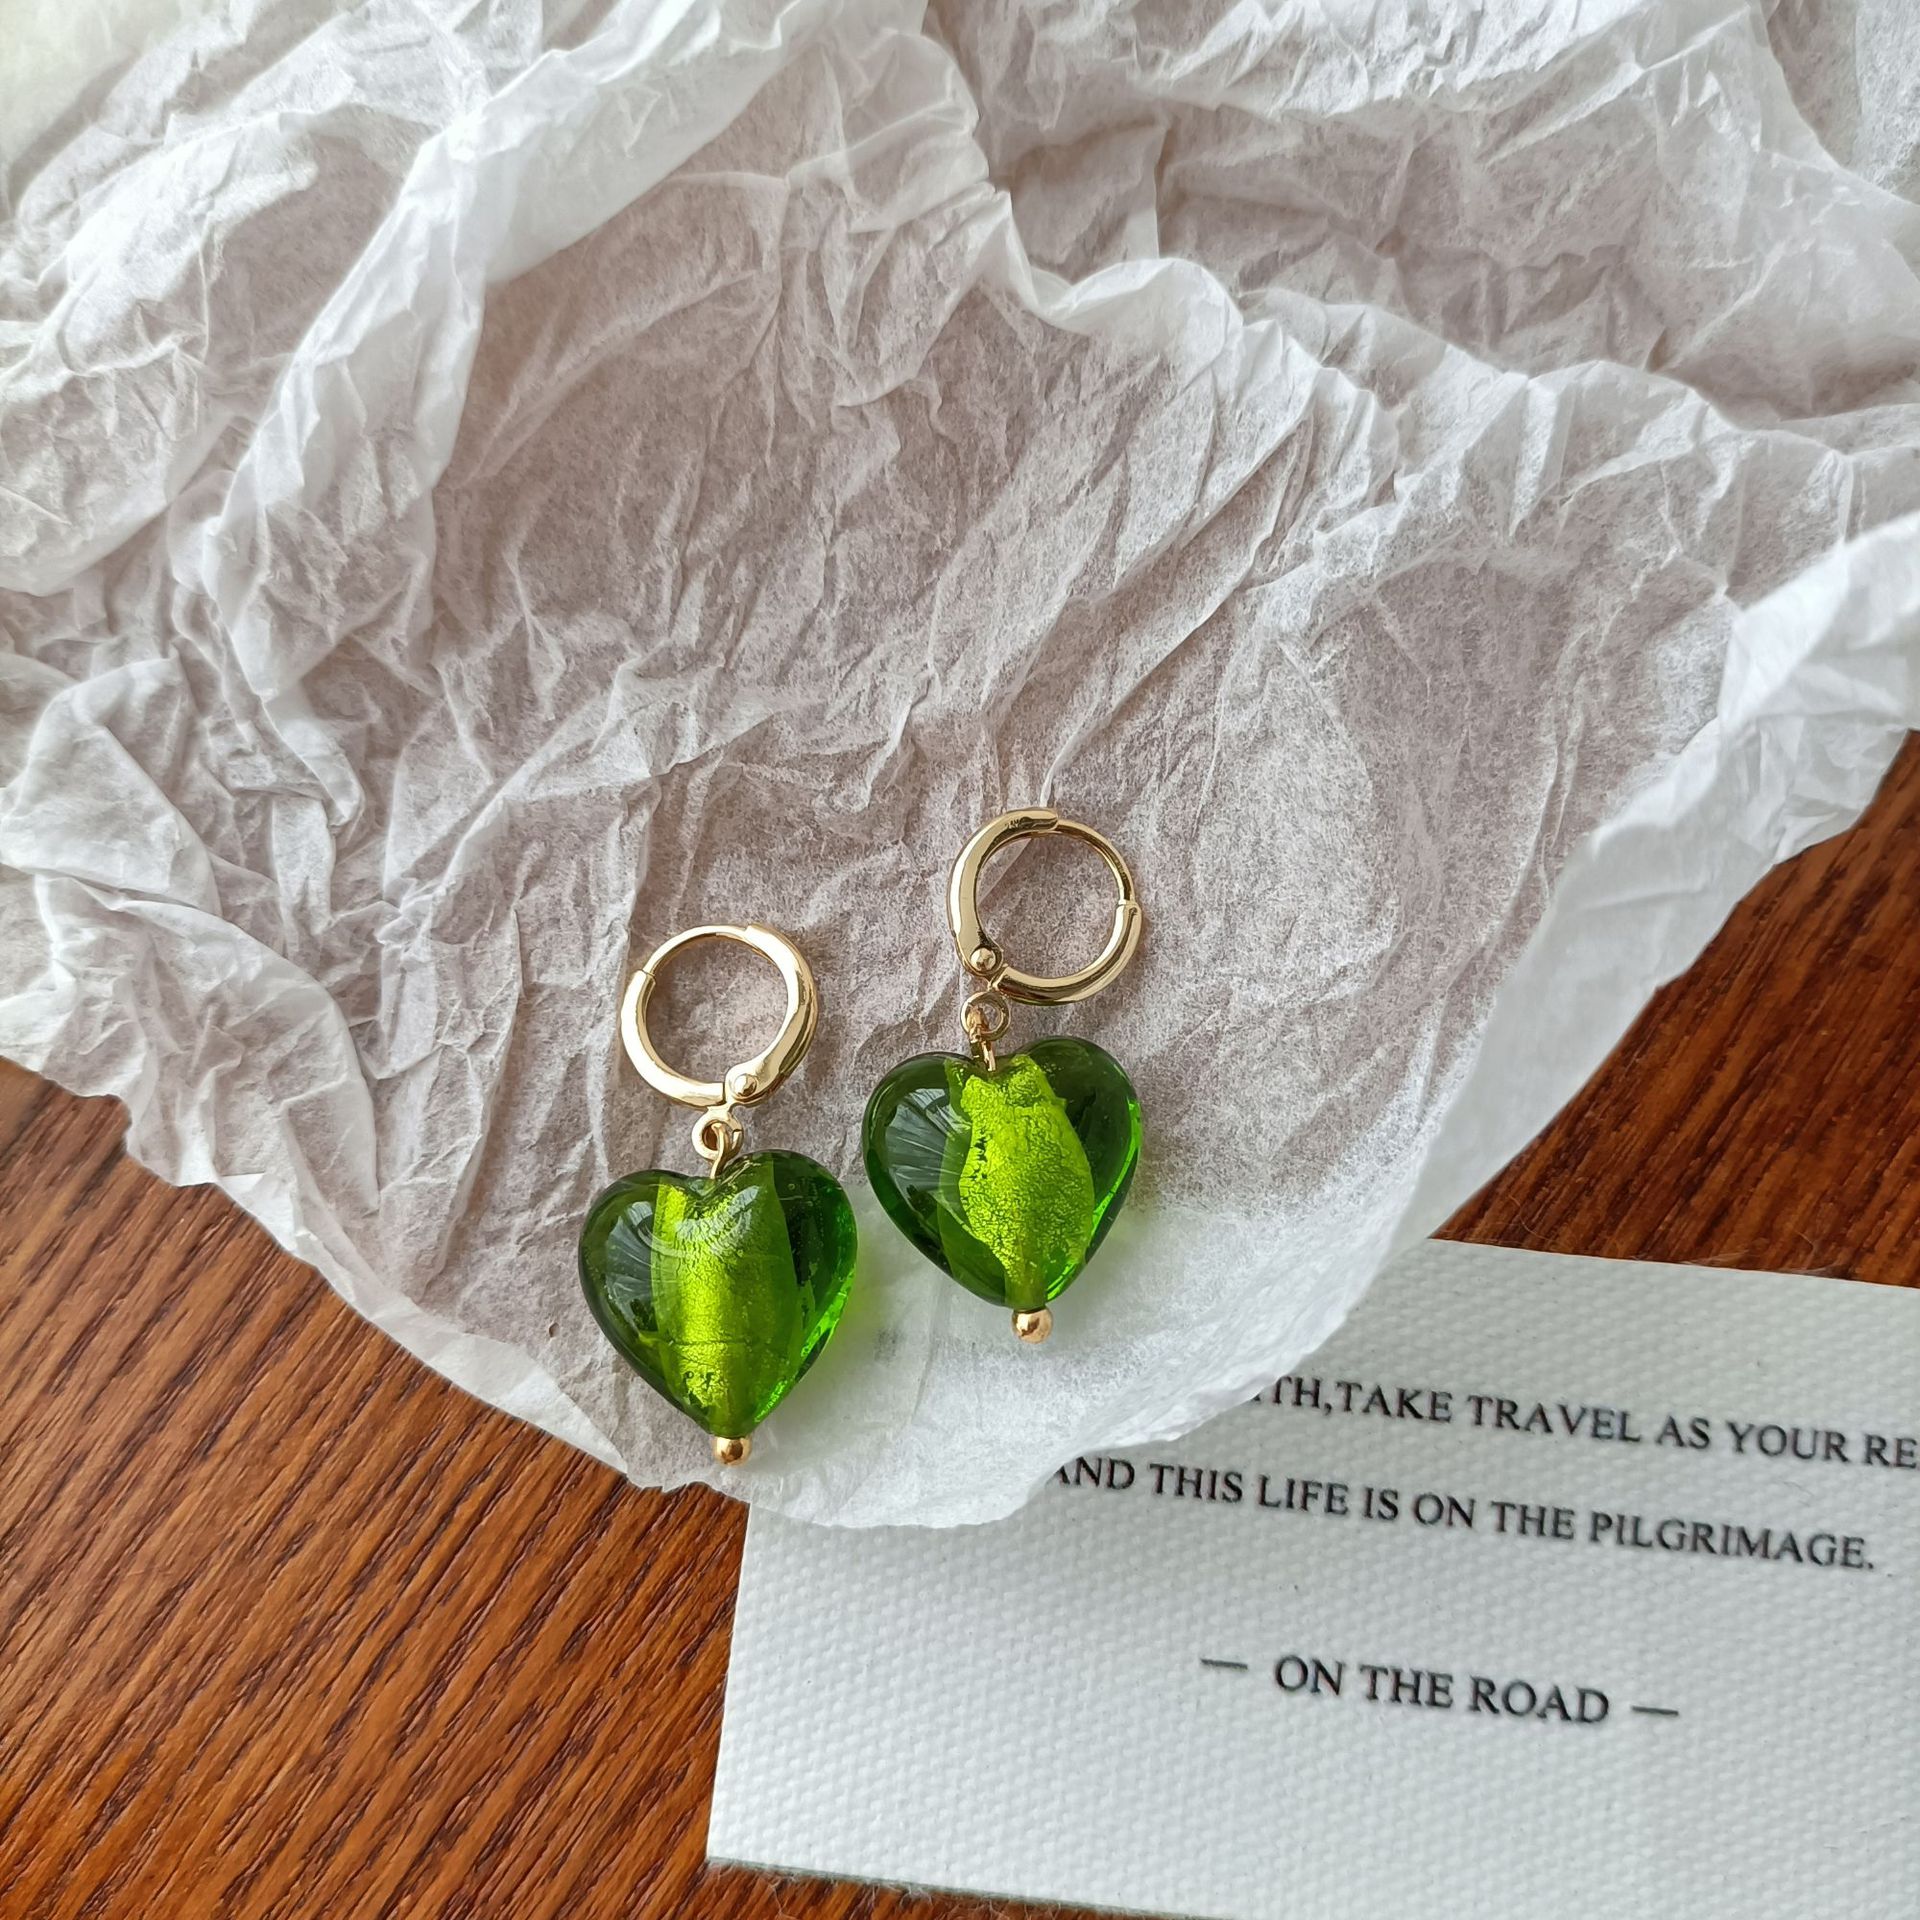 1:Green earrings